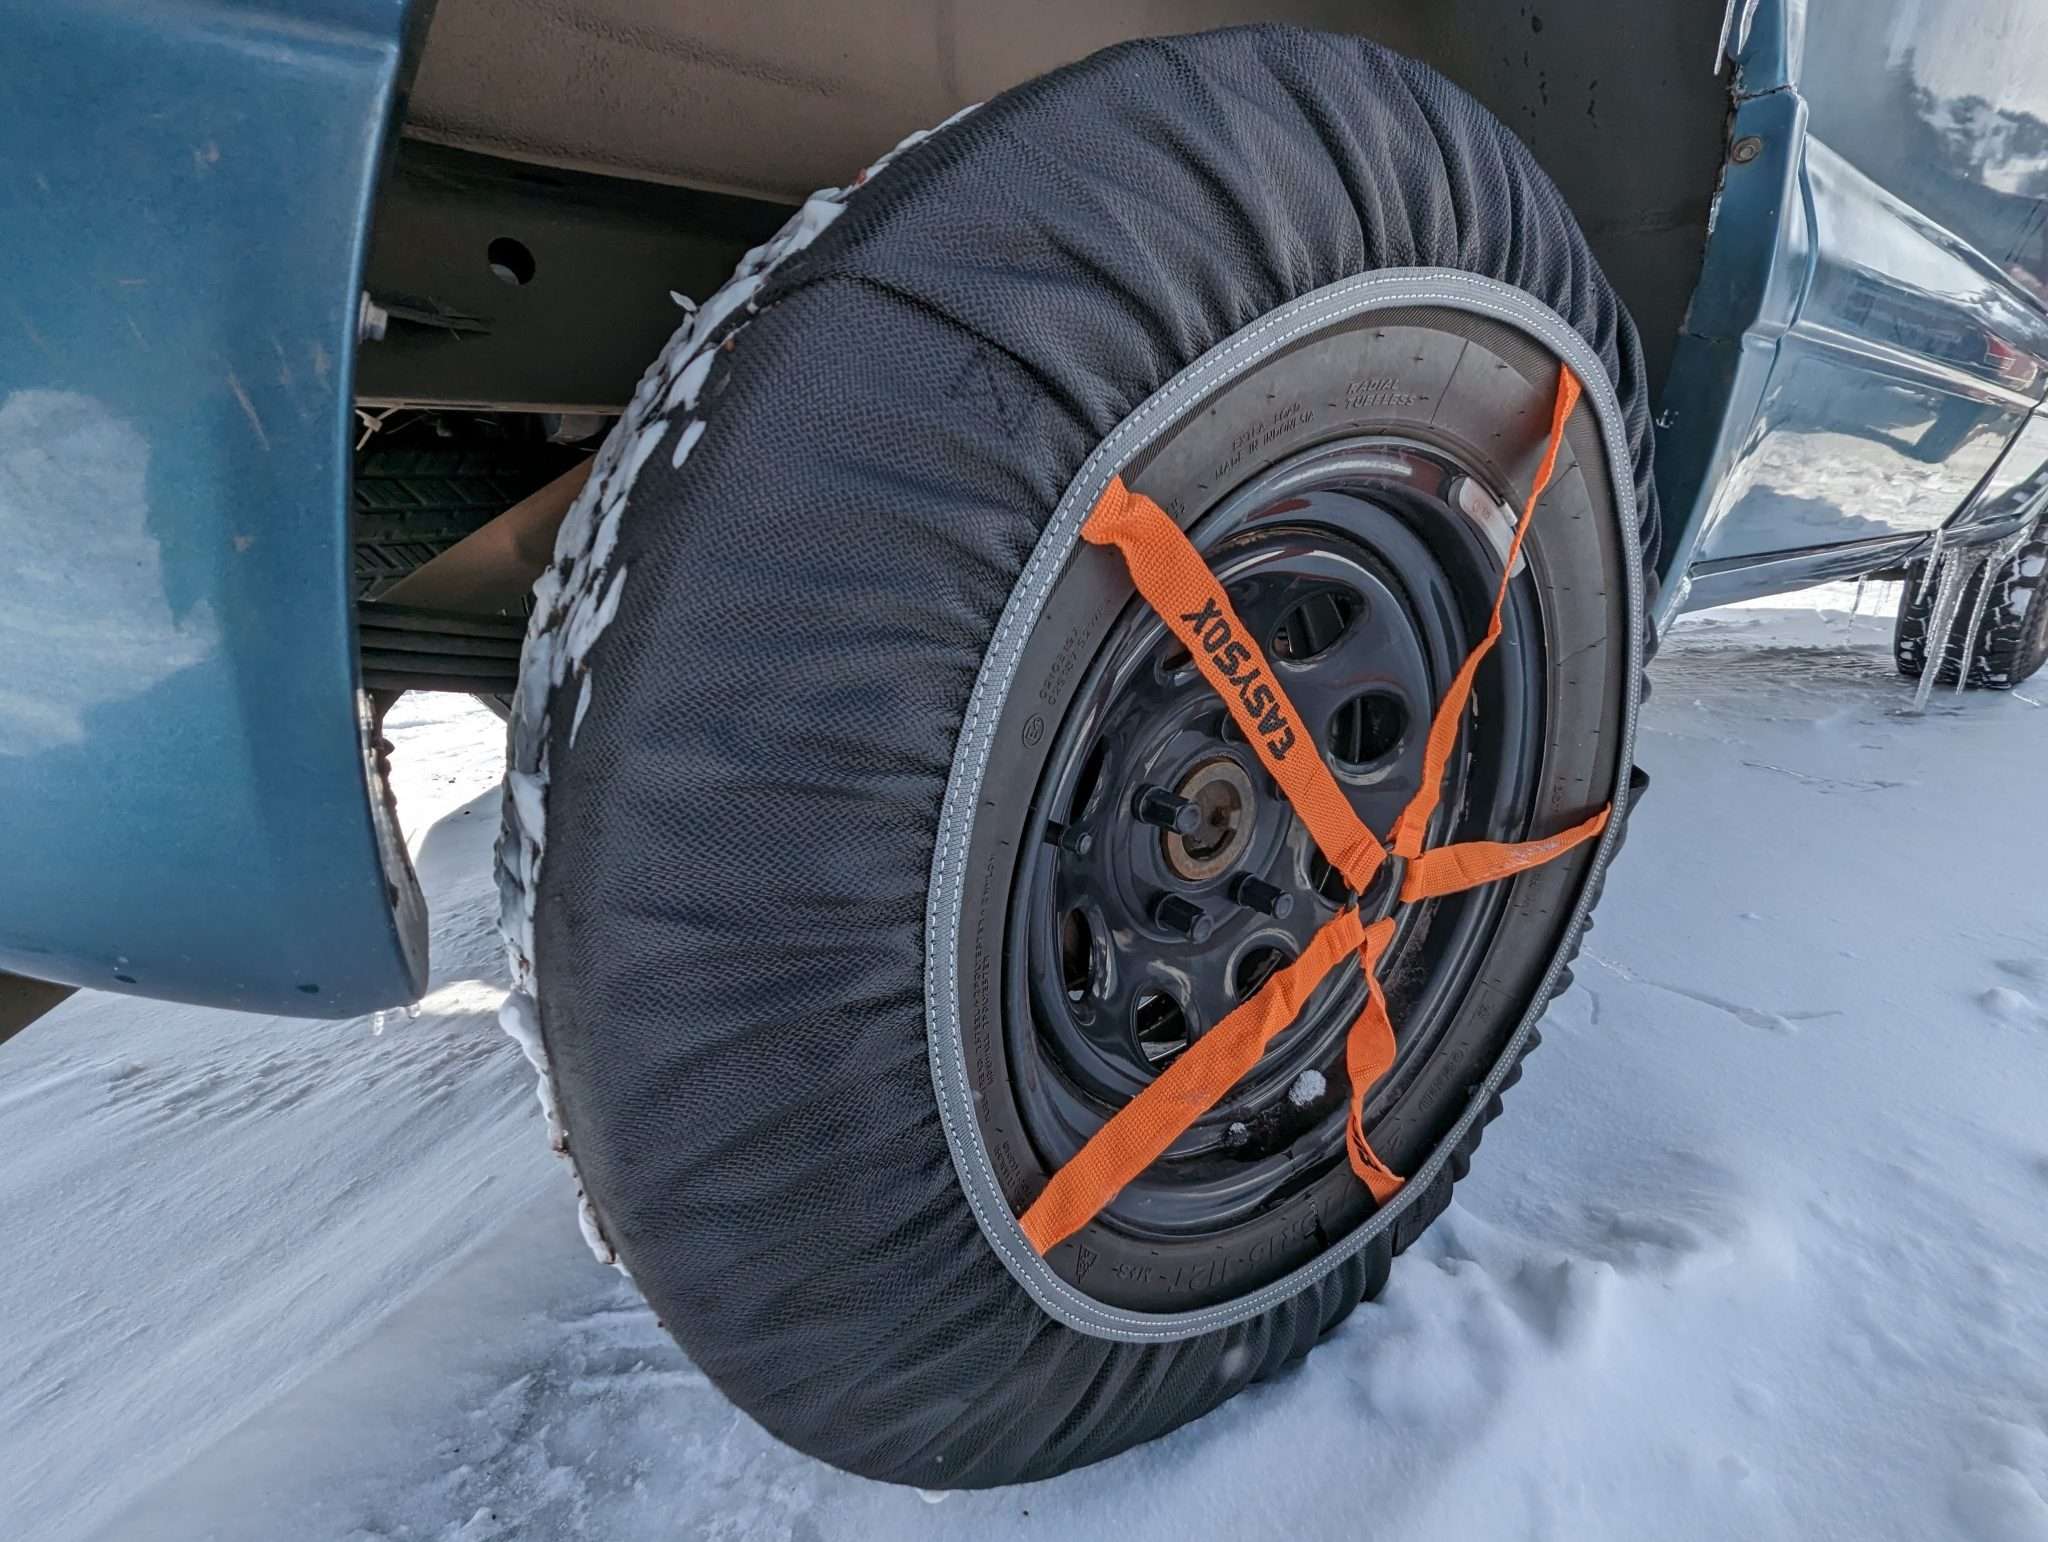 Snow socks on tires